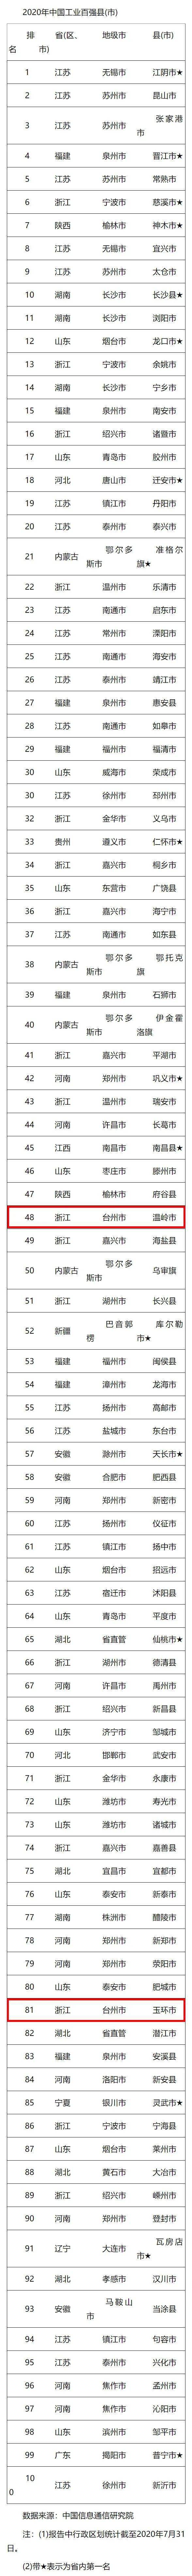 中国百强市2020年排名_2020年中国工业百强县(市)出炉河南这10地上榜